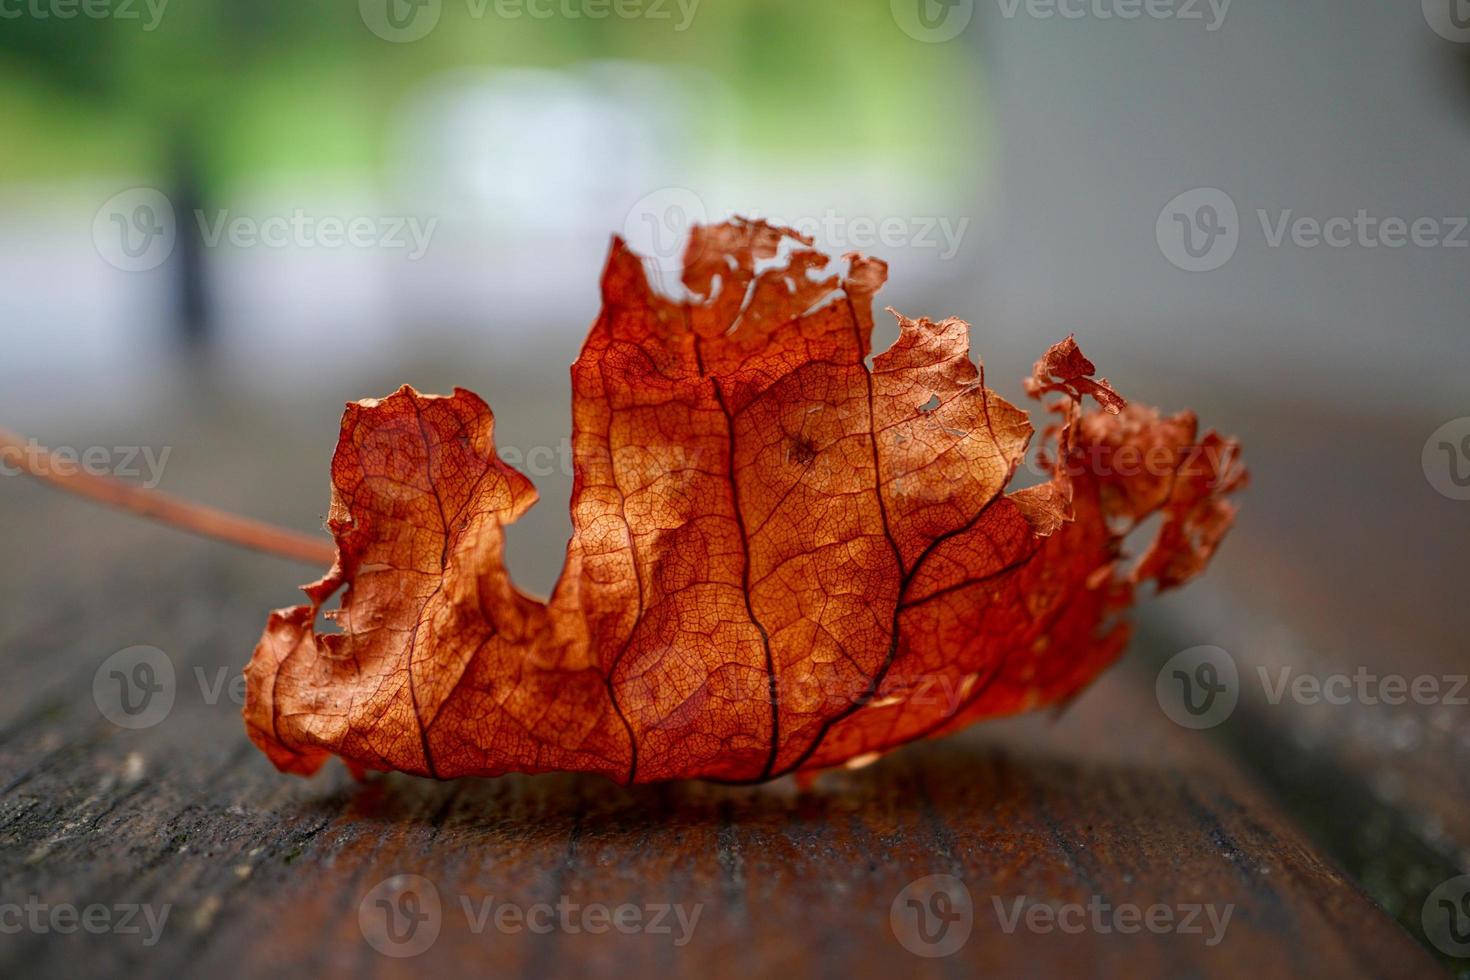 folha de árvore marrom na temporada de outono foto